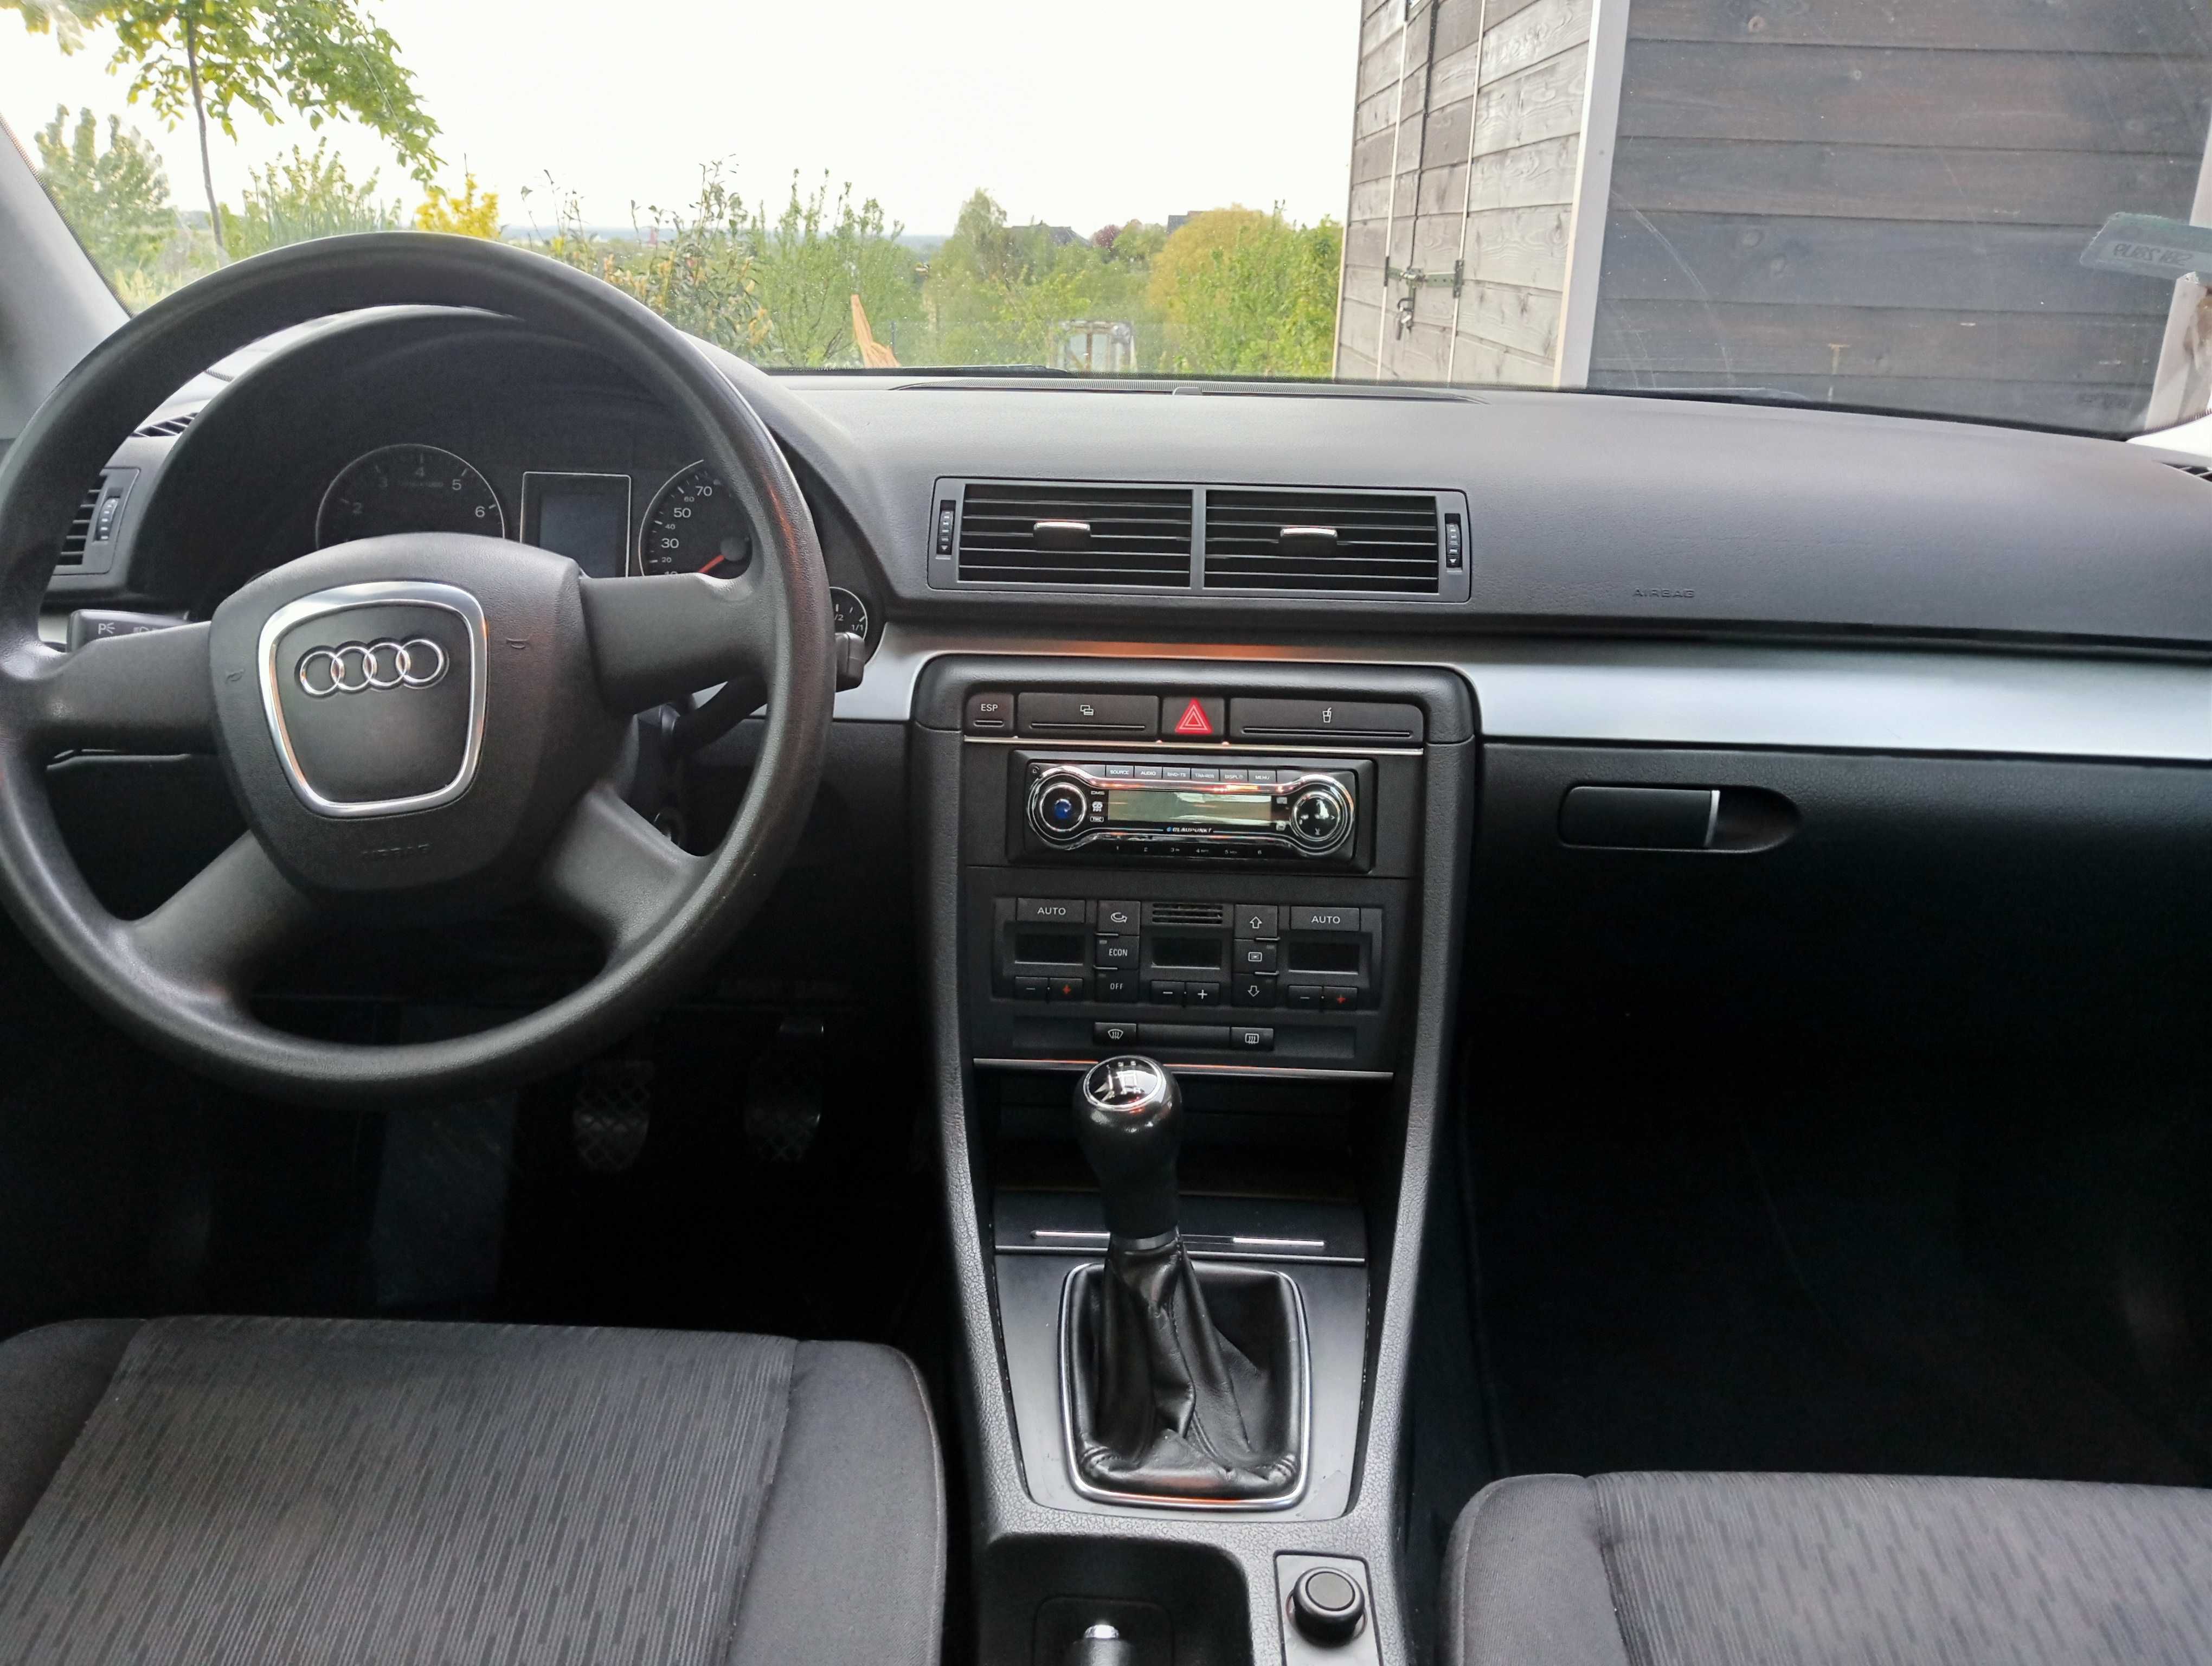 Audi a4 1,6 2006 sedan